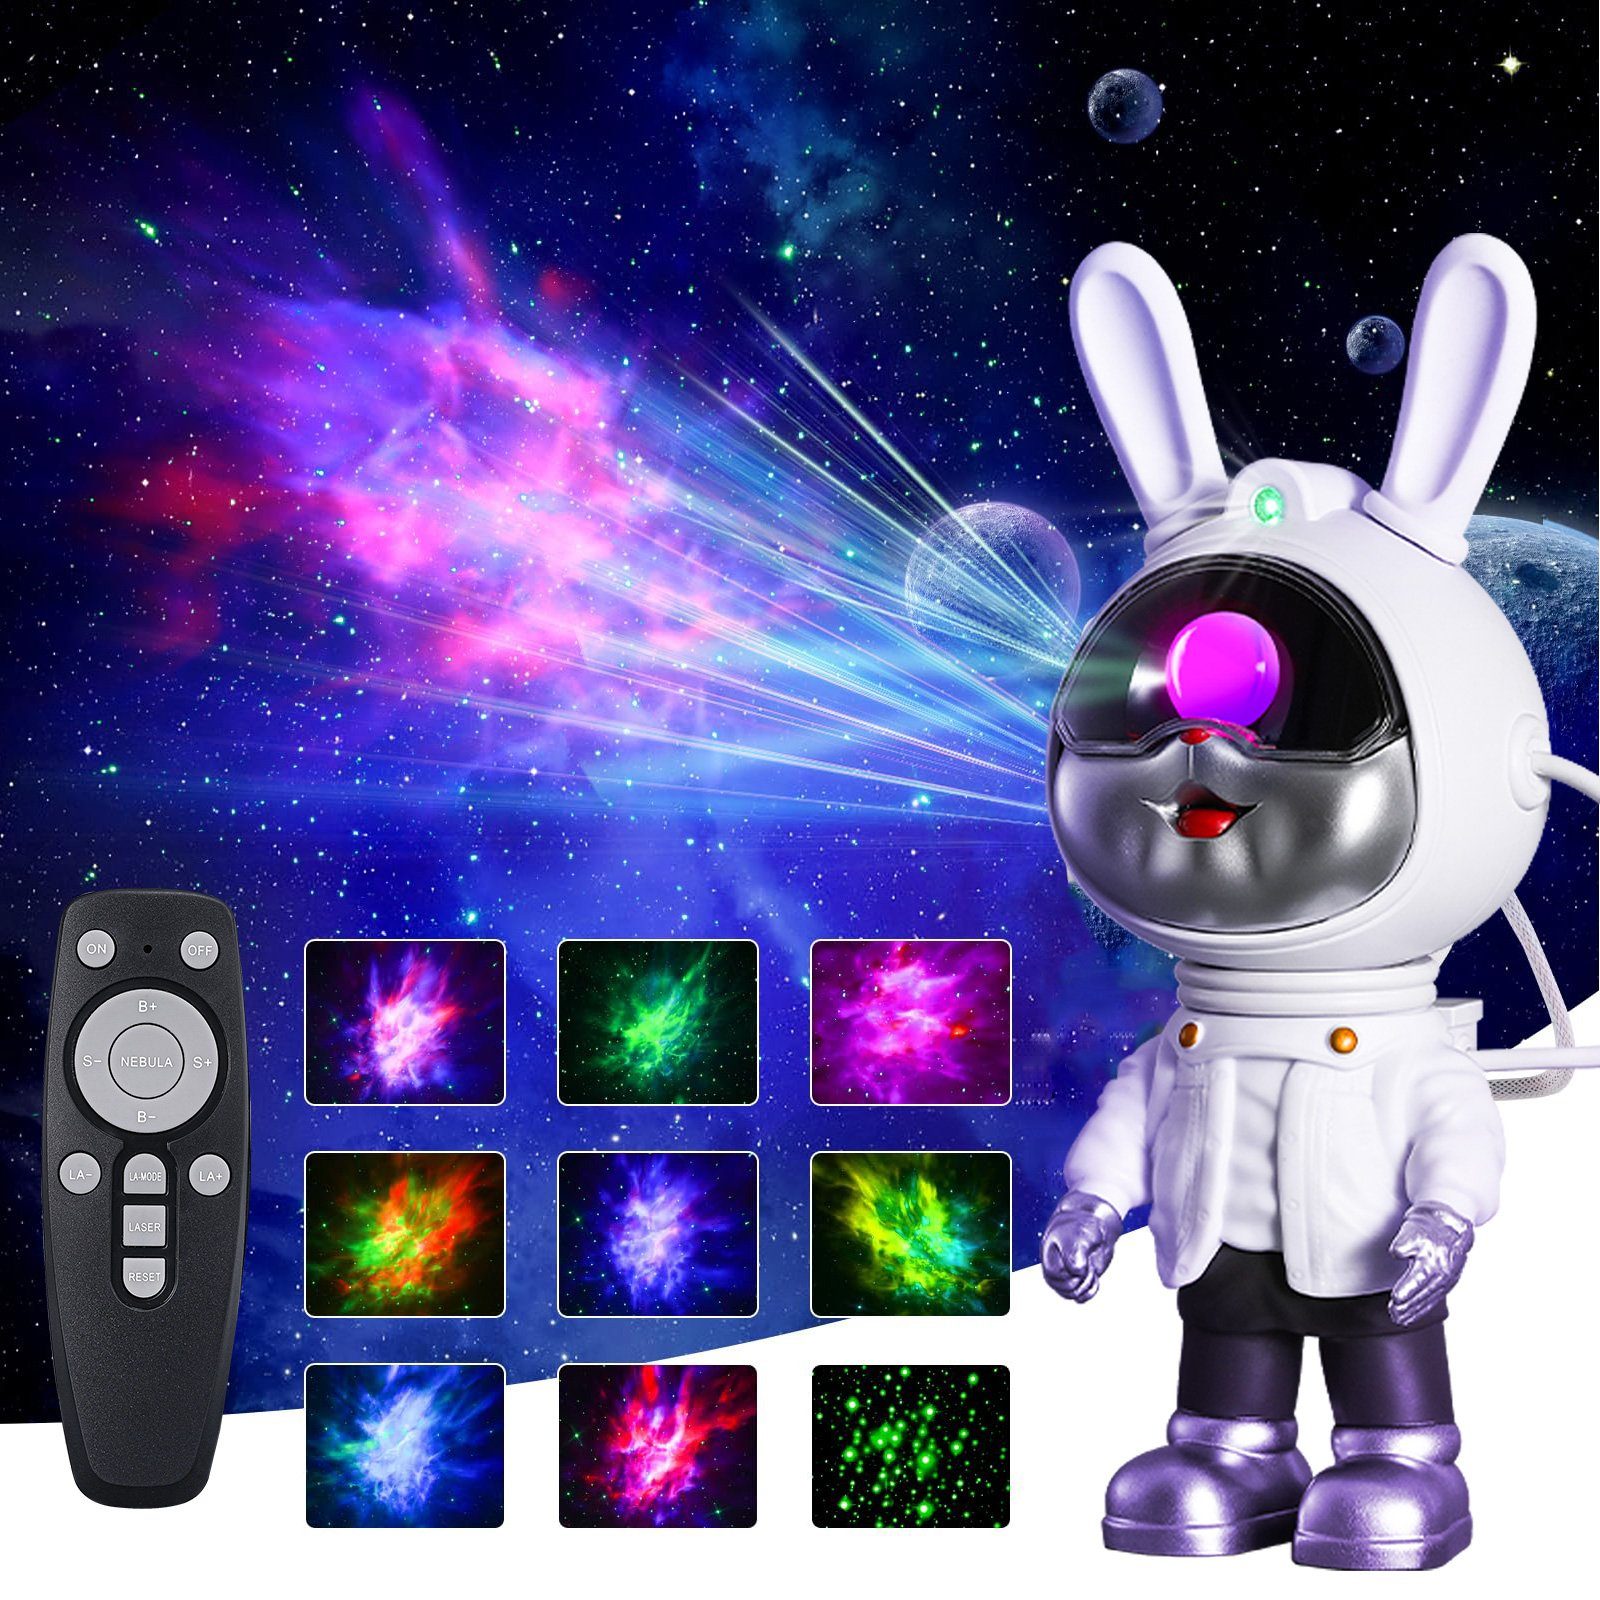 MUPOO LED Nachtlicht LED Sternenhimmel Nachttischlampe Astronaut Projektor USB Nachtlicht, Hasen-Astronaut 360° Verstellbares, Led Projektor Projektionslampe Fernbedienung,Kinder Zimmer Dekor